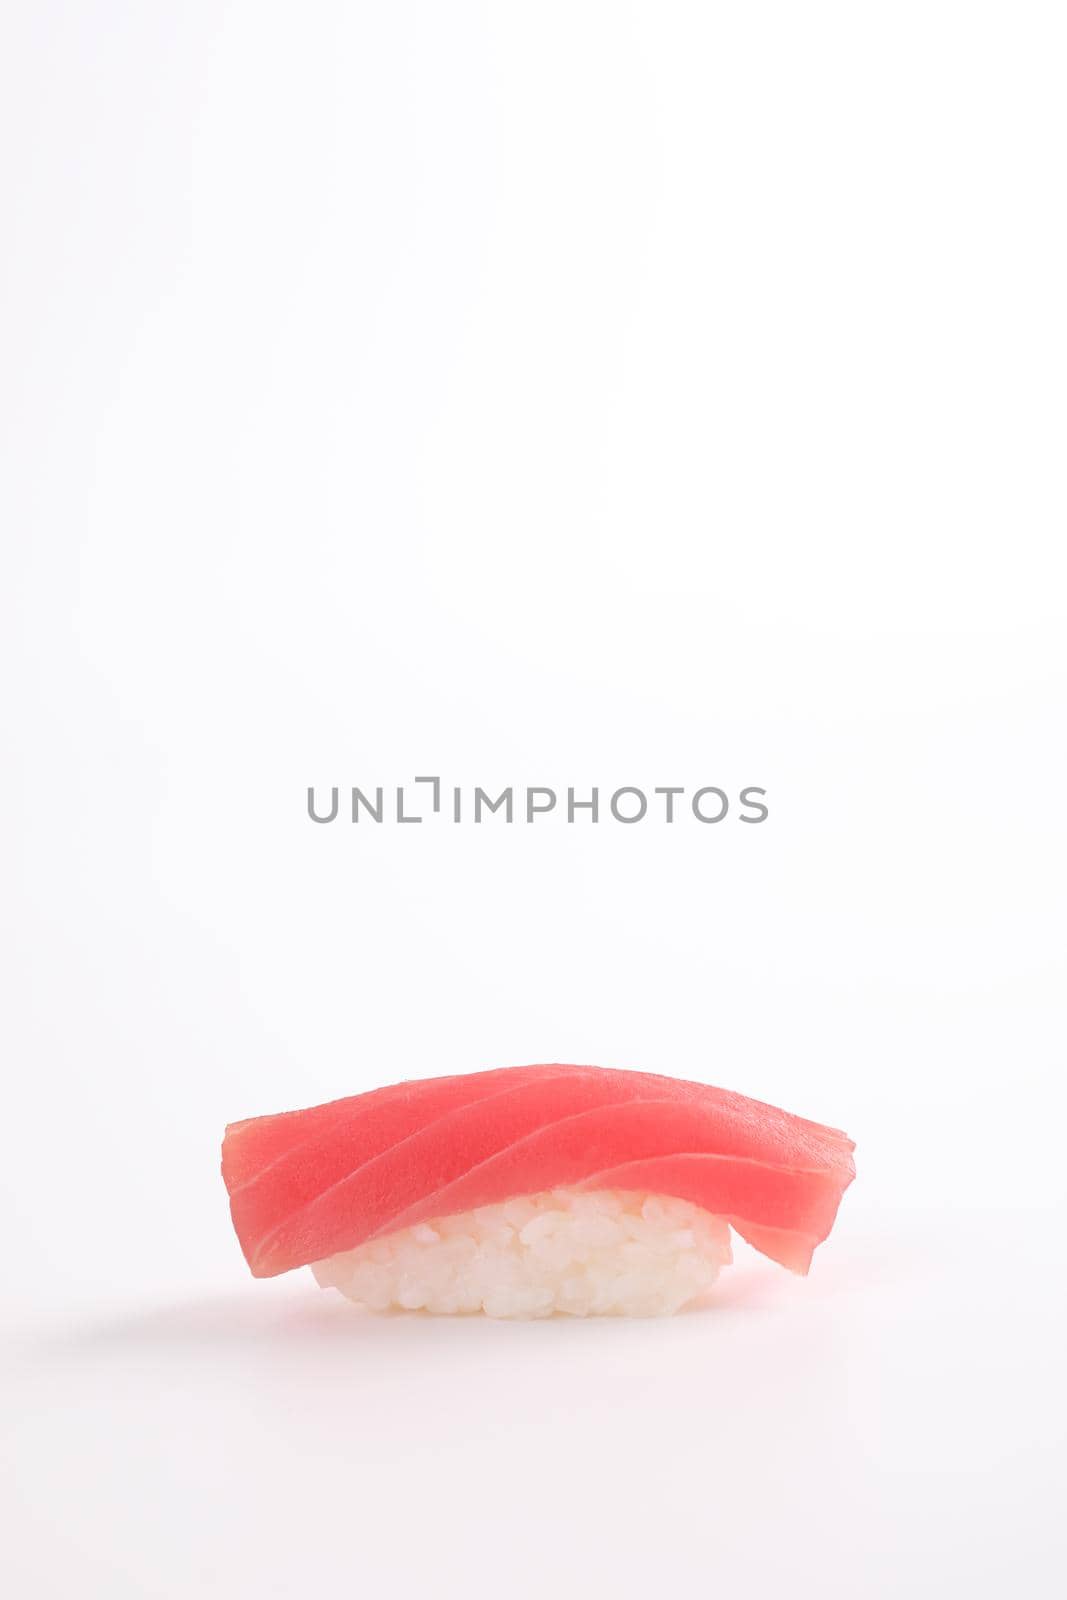 Tuna sushi , Japanese food isolated in white background by piyato